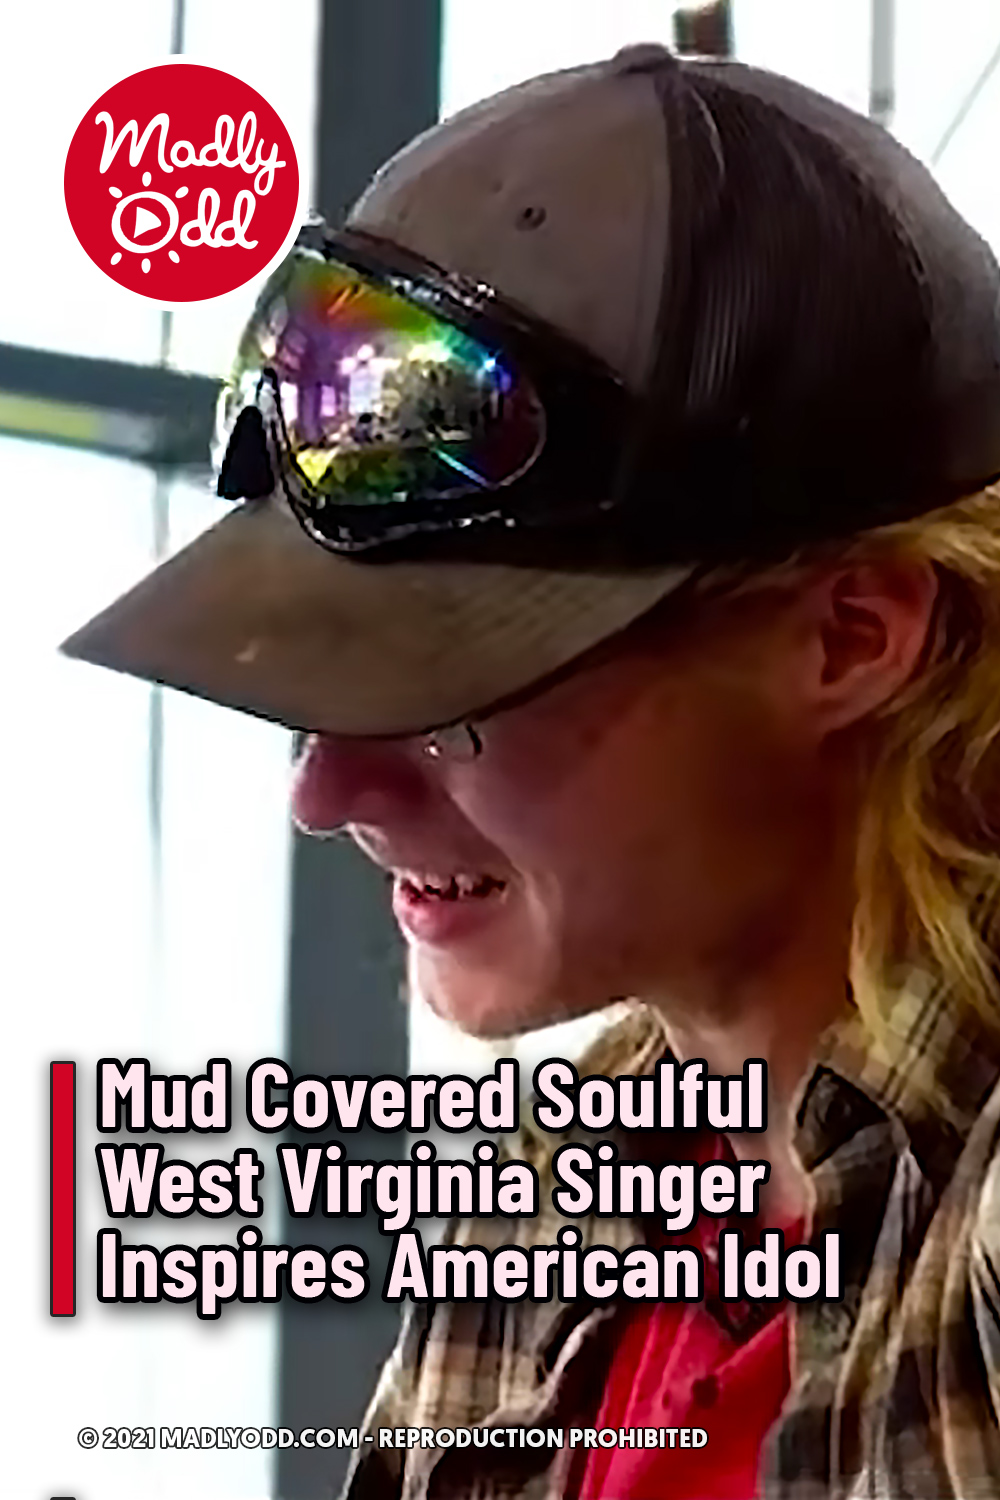 Mud Covered Soulful West Virginia Singer Inspires American Idol